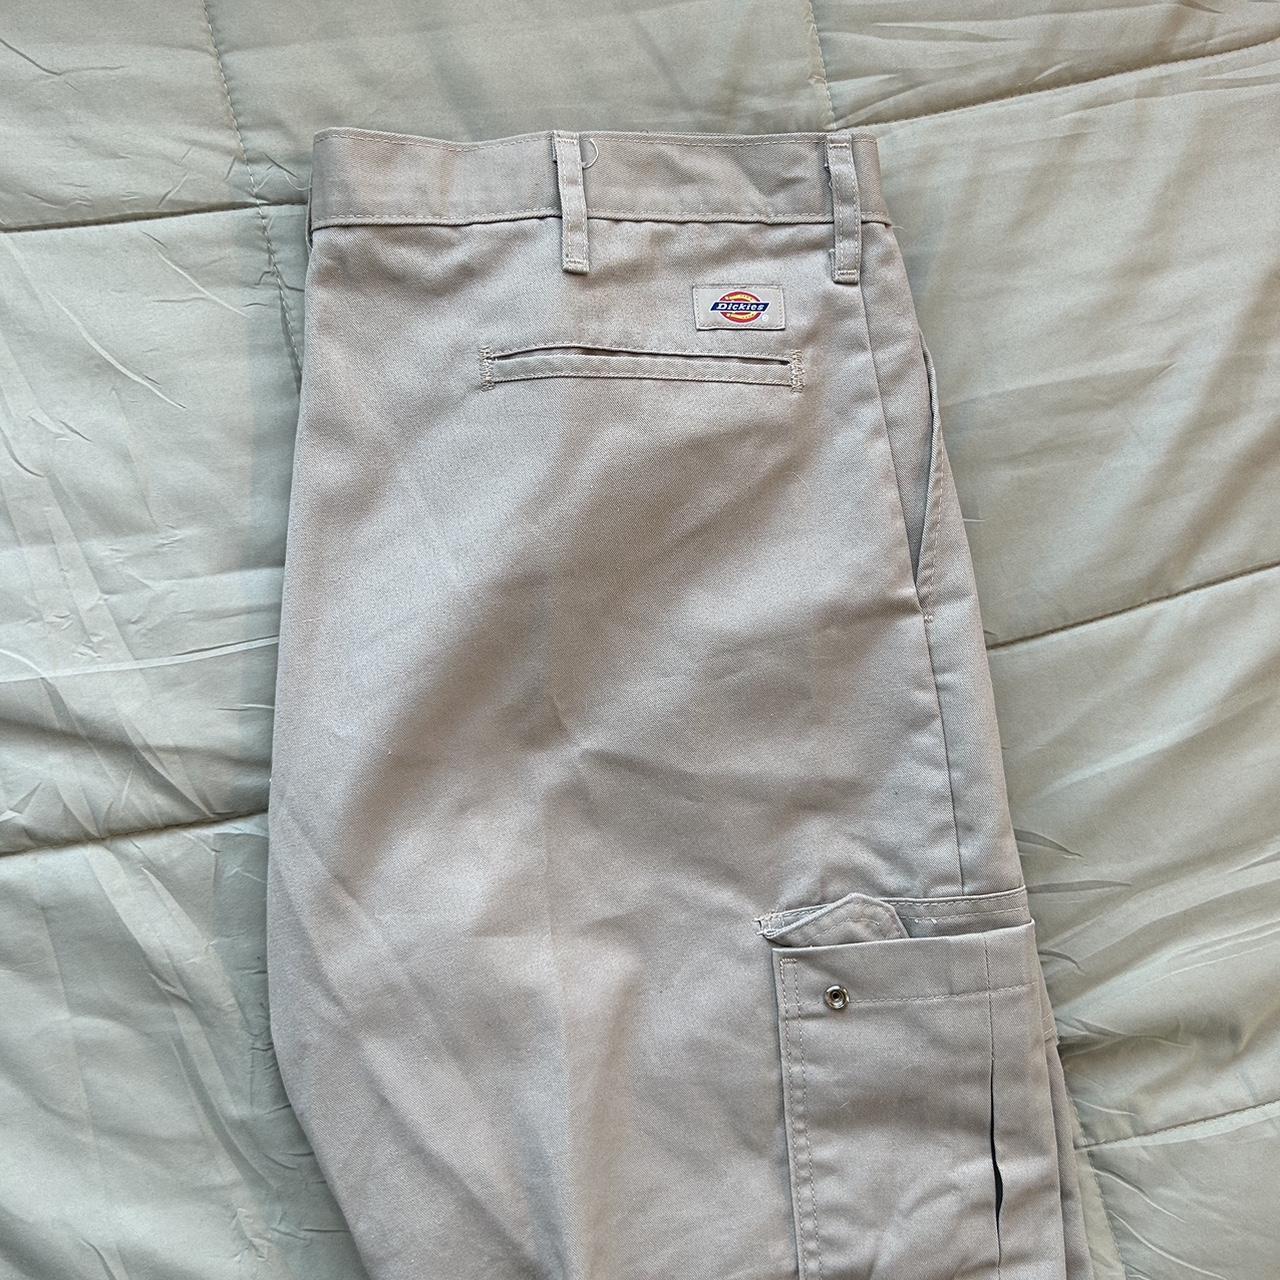 Khaki Dickies pants 38x32 #dickies #yk2 #vintage... - Depop